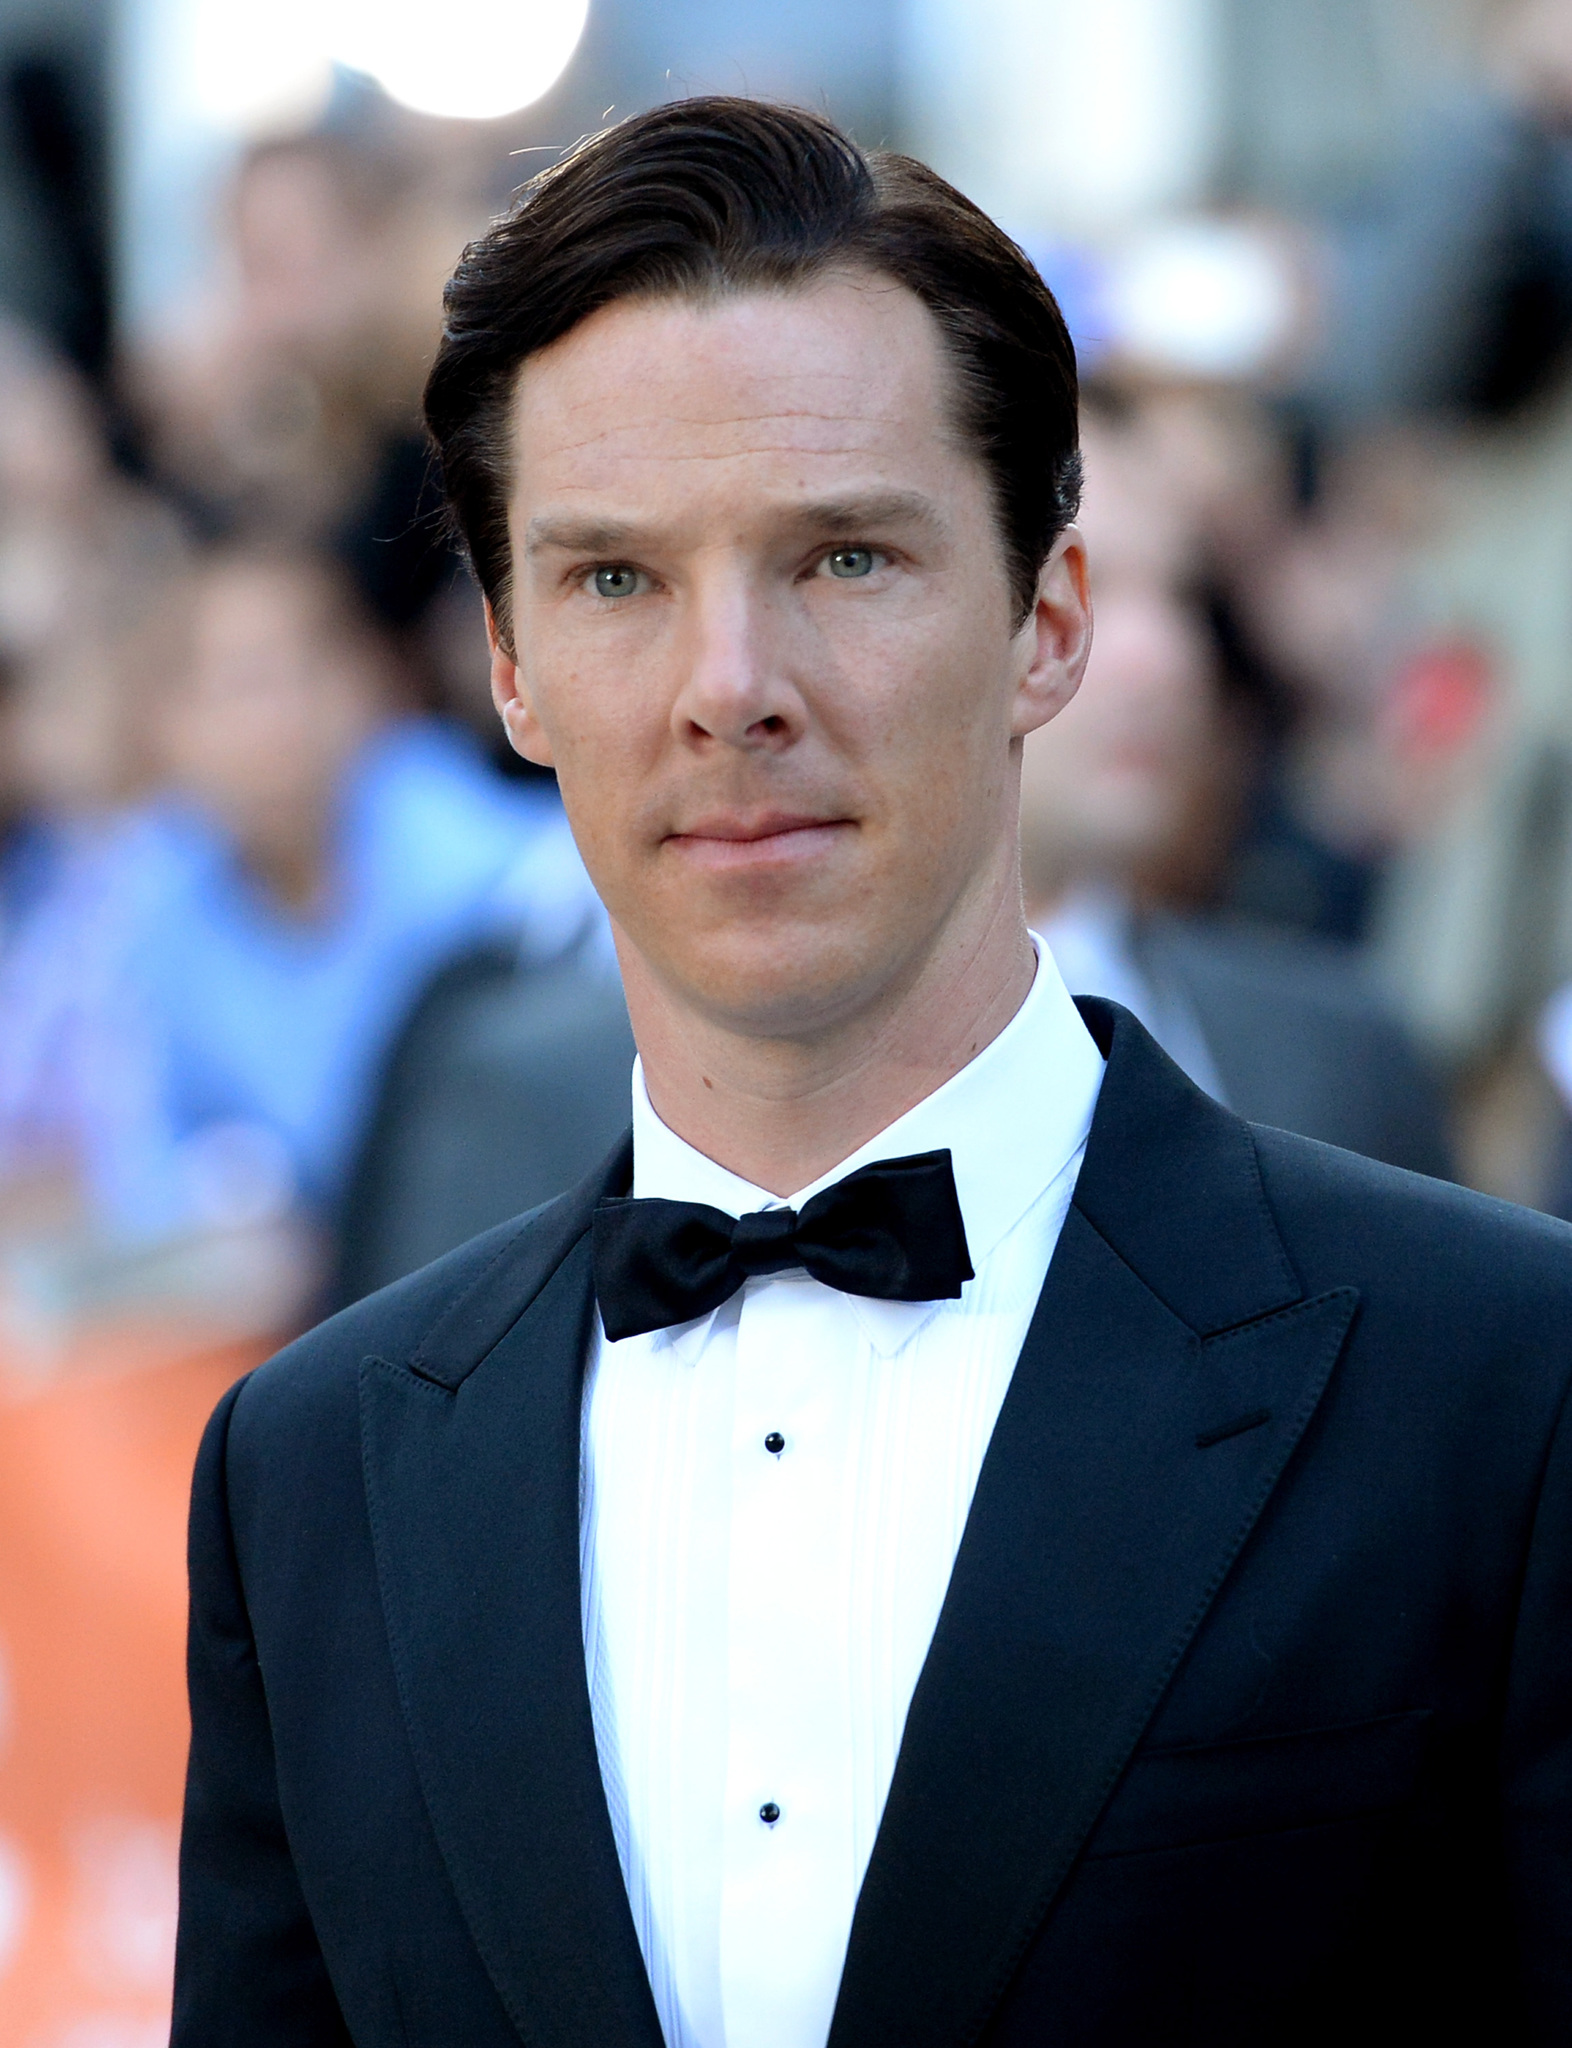 Benedict Cumberbatch at event of Penktoji valdzia (2013)